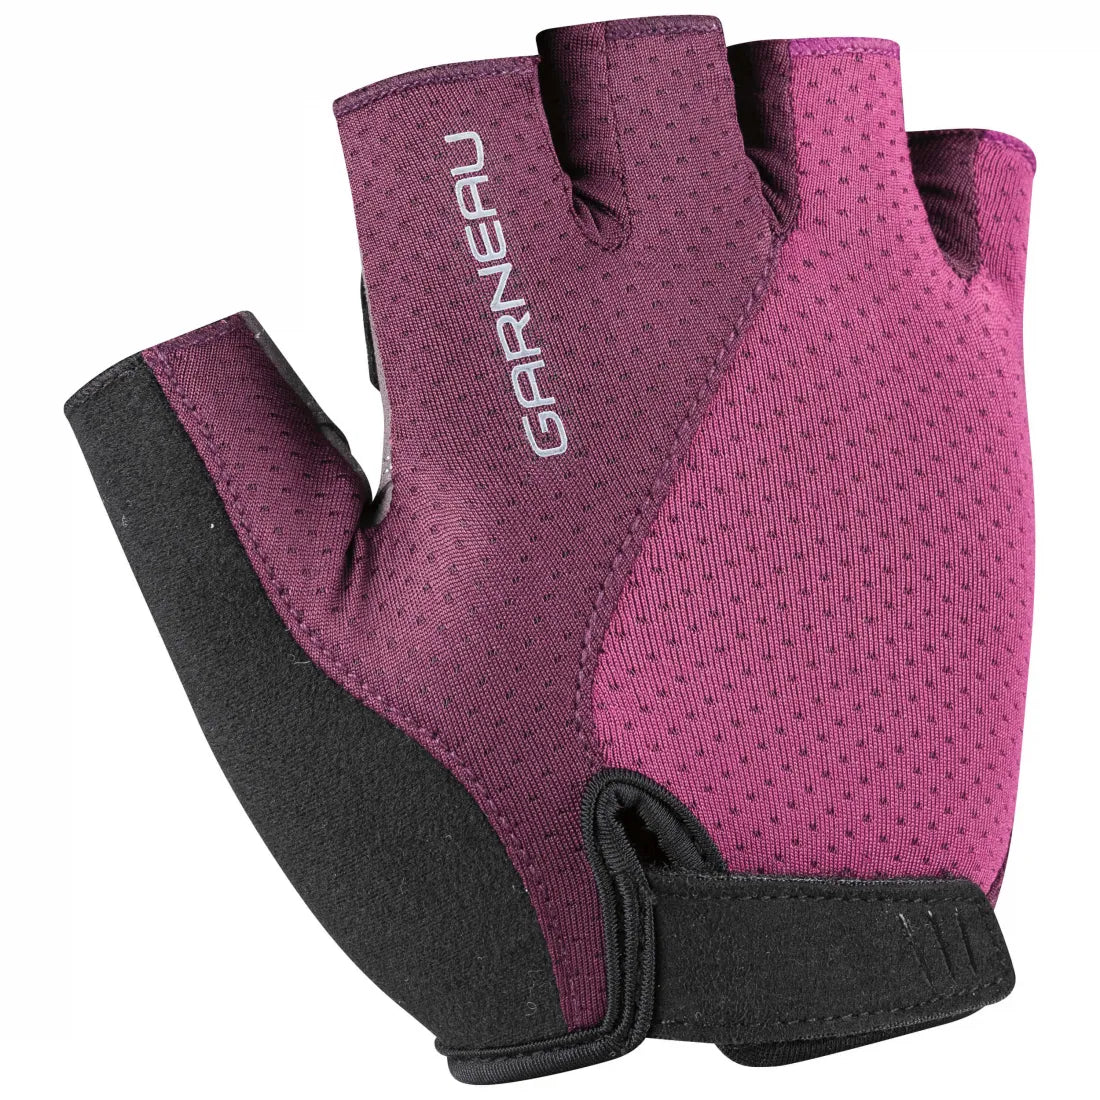 Air gel ultra cycling gloves Women